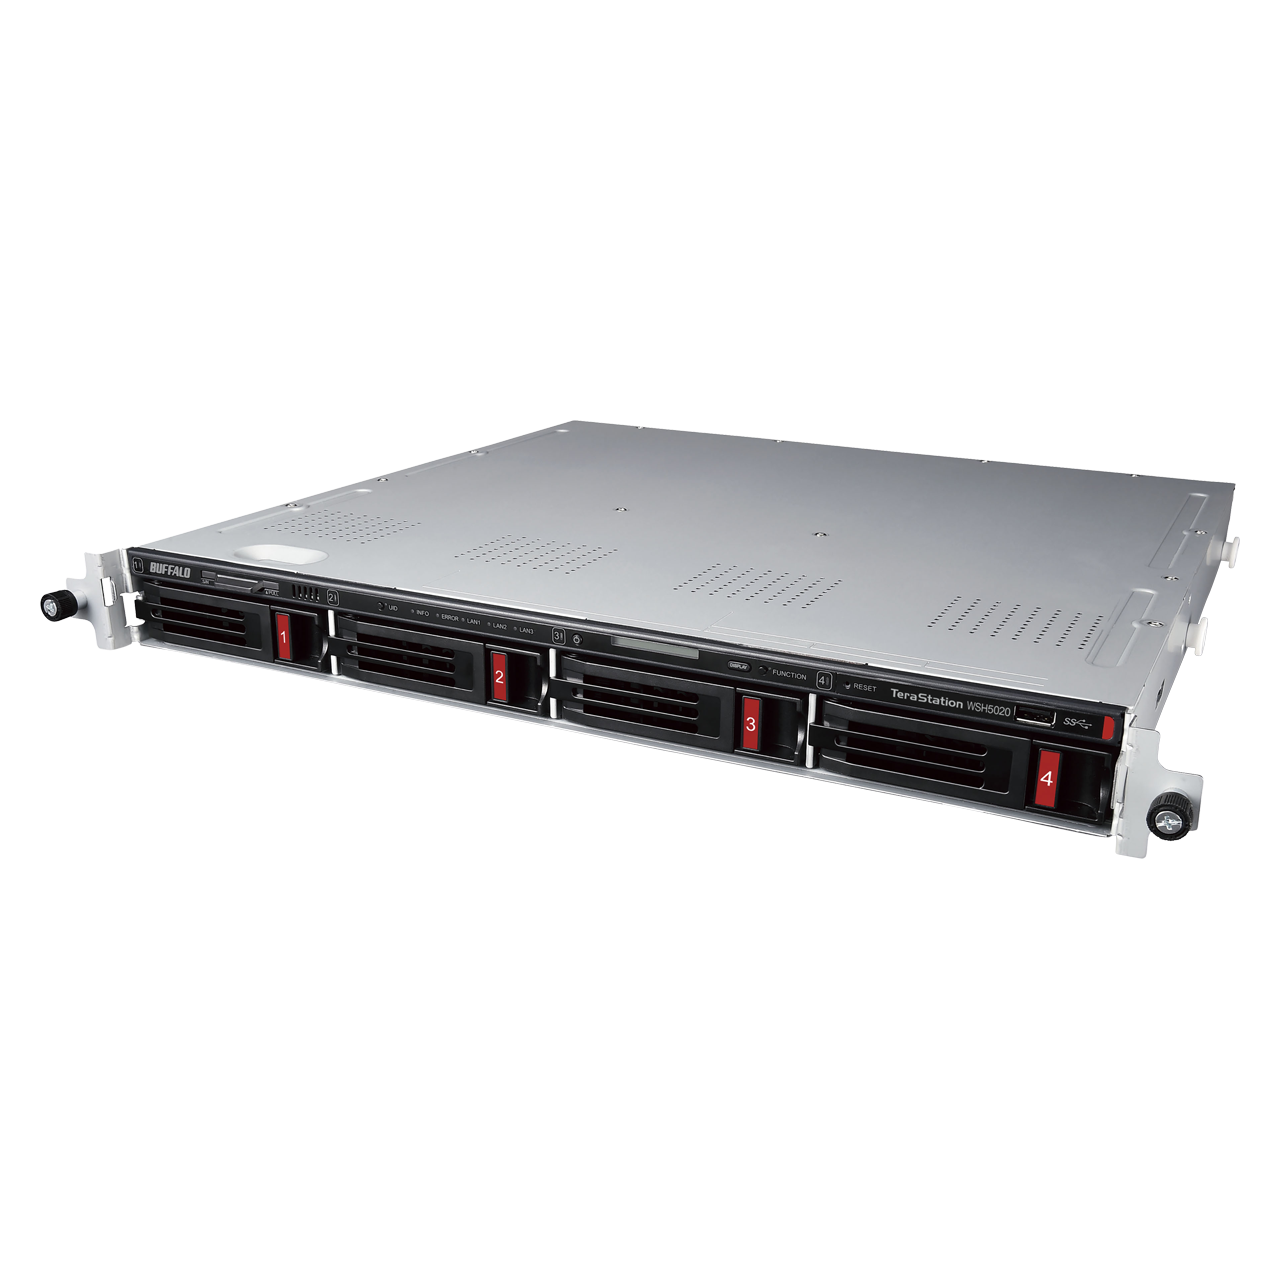 RAID 6に対応した国内開発ハードウェアRAID搭載 法人様向けNAS「テラステーション WSS」Windows Server IoT 2022 for Storage搭載モデルを2022年7月下旬に発売